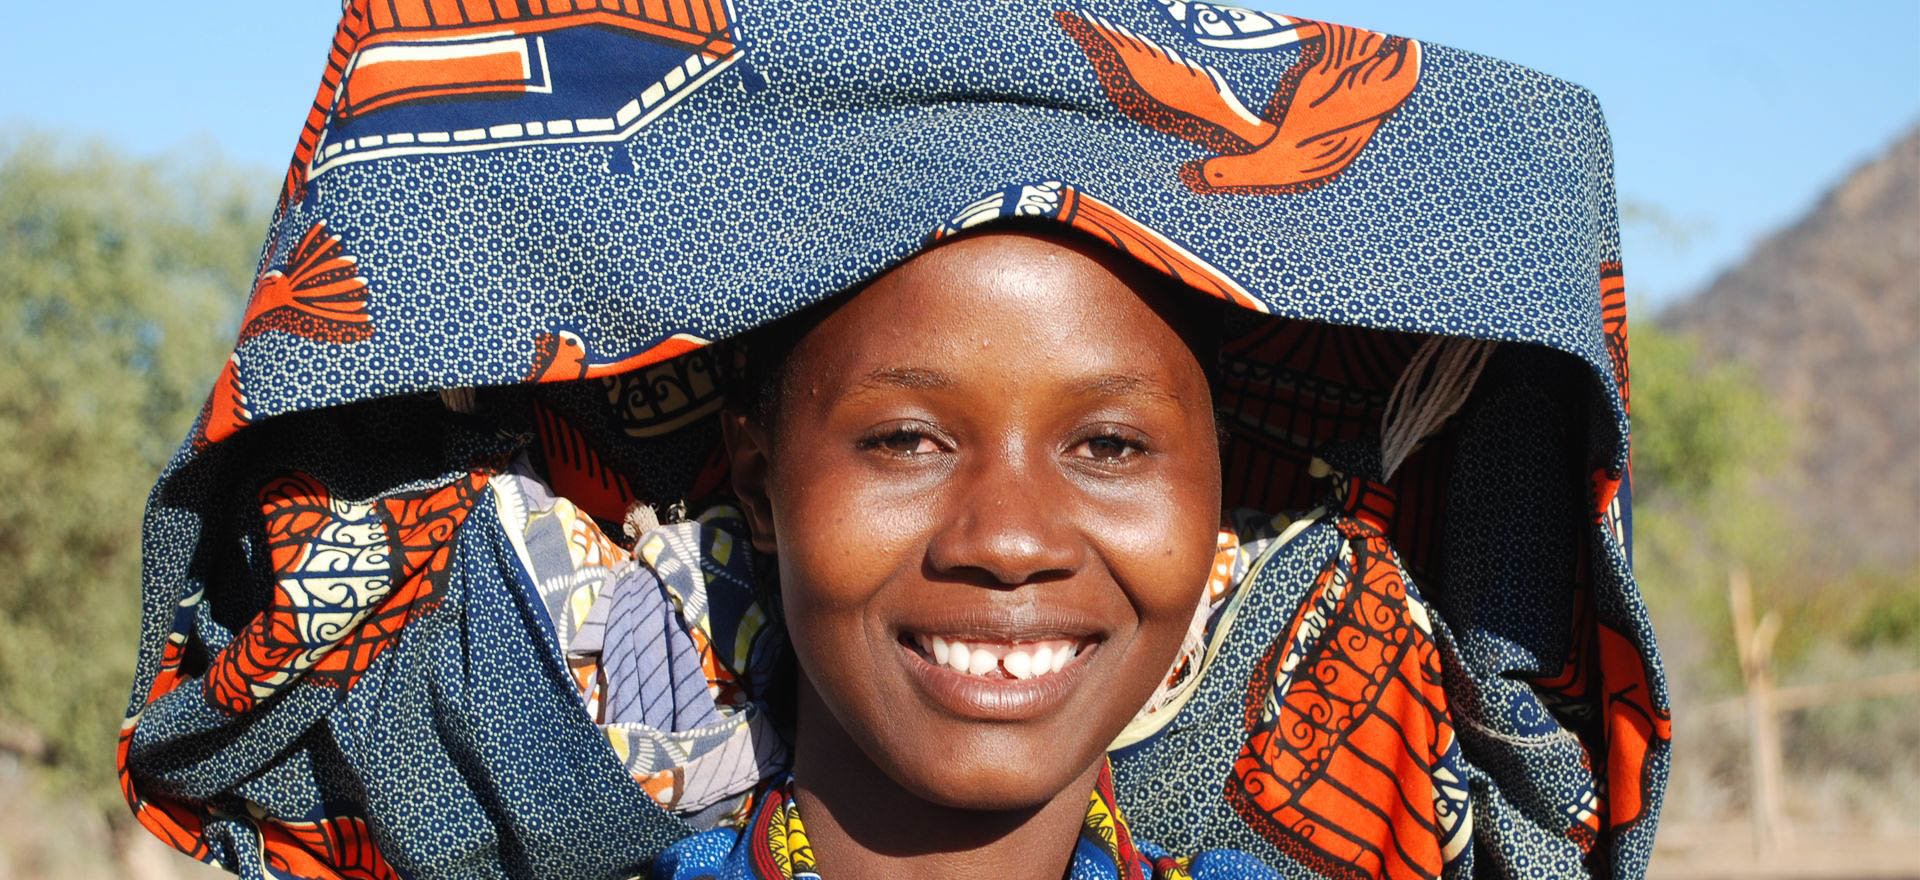 Mucubal woman - Angola holidays